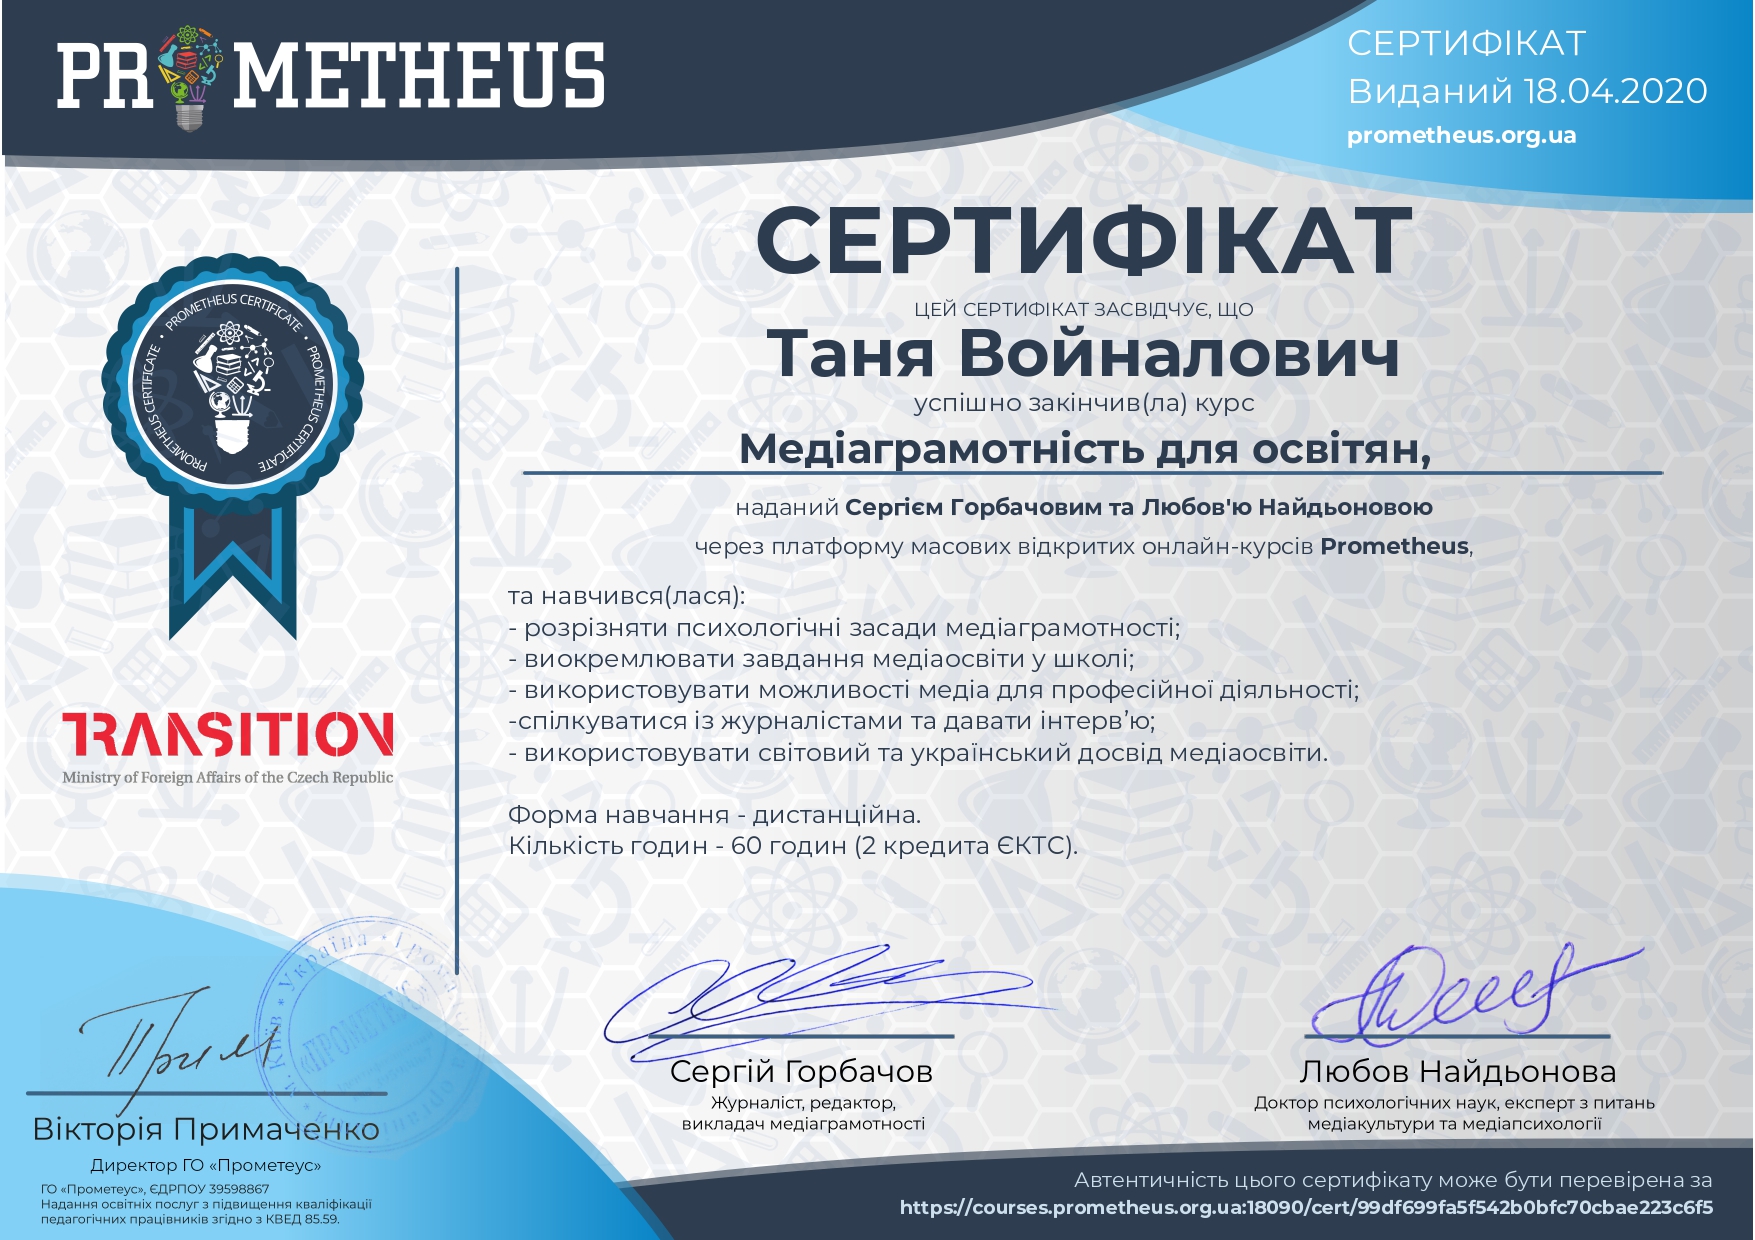 Сертифікат "Медіаграмотність для освітян"